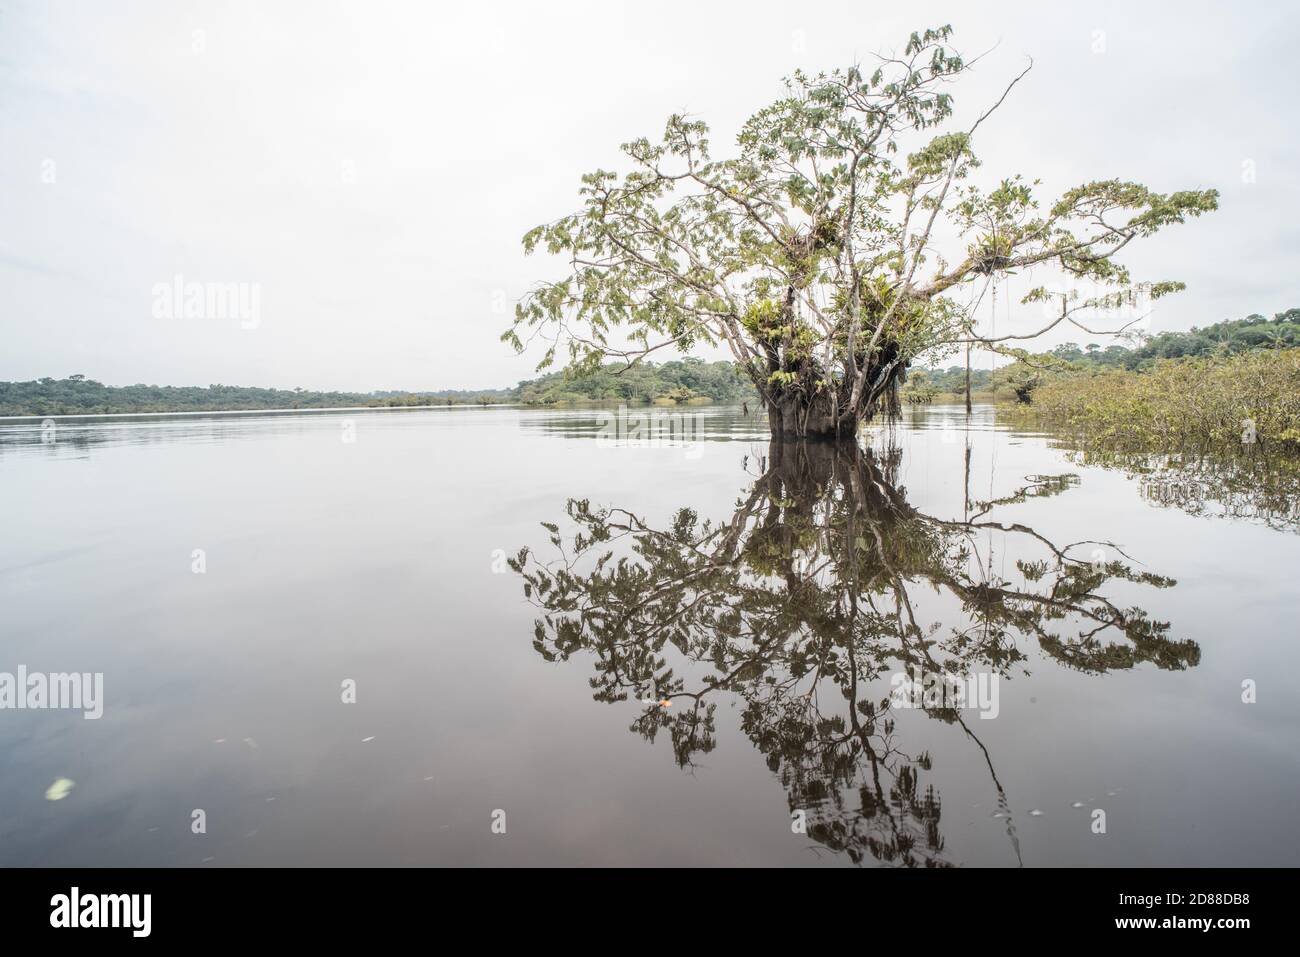 La forêt amazonienne inondée de la réserve naturelle de Cuyabeno en Équateur. Banque D'Images